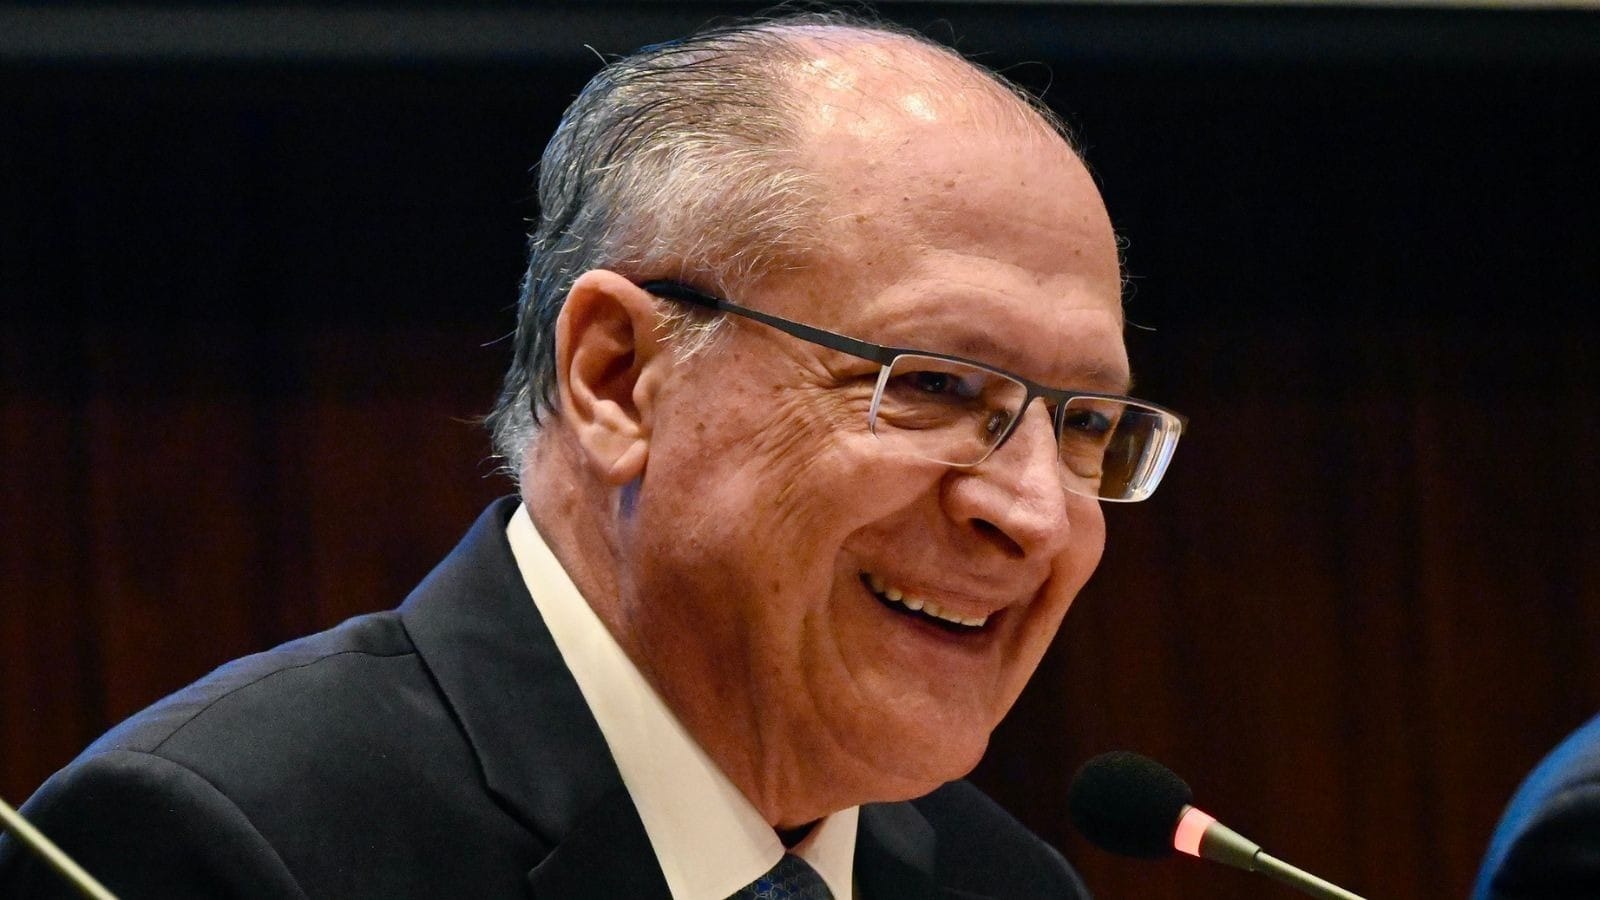 AO VIVO: Reinaldo Azevedo conversa com o vice-presidente Geraldo Alckmin